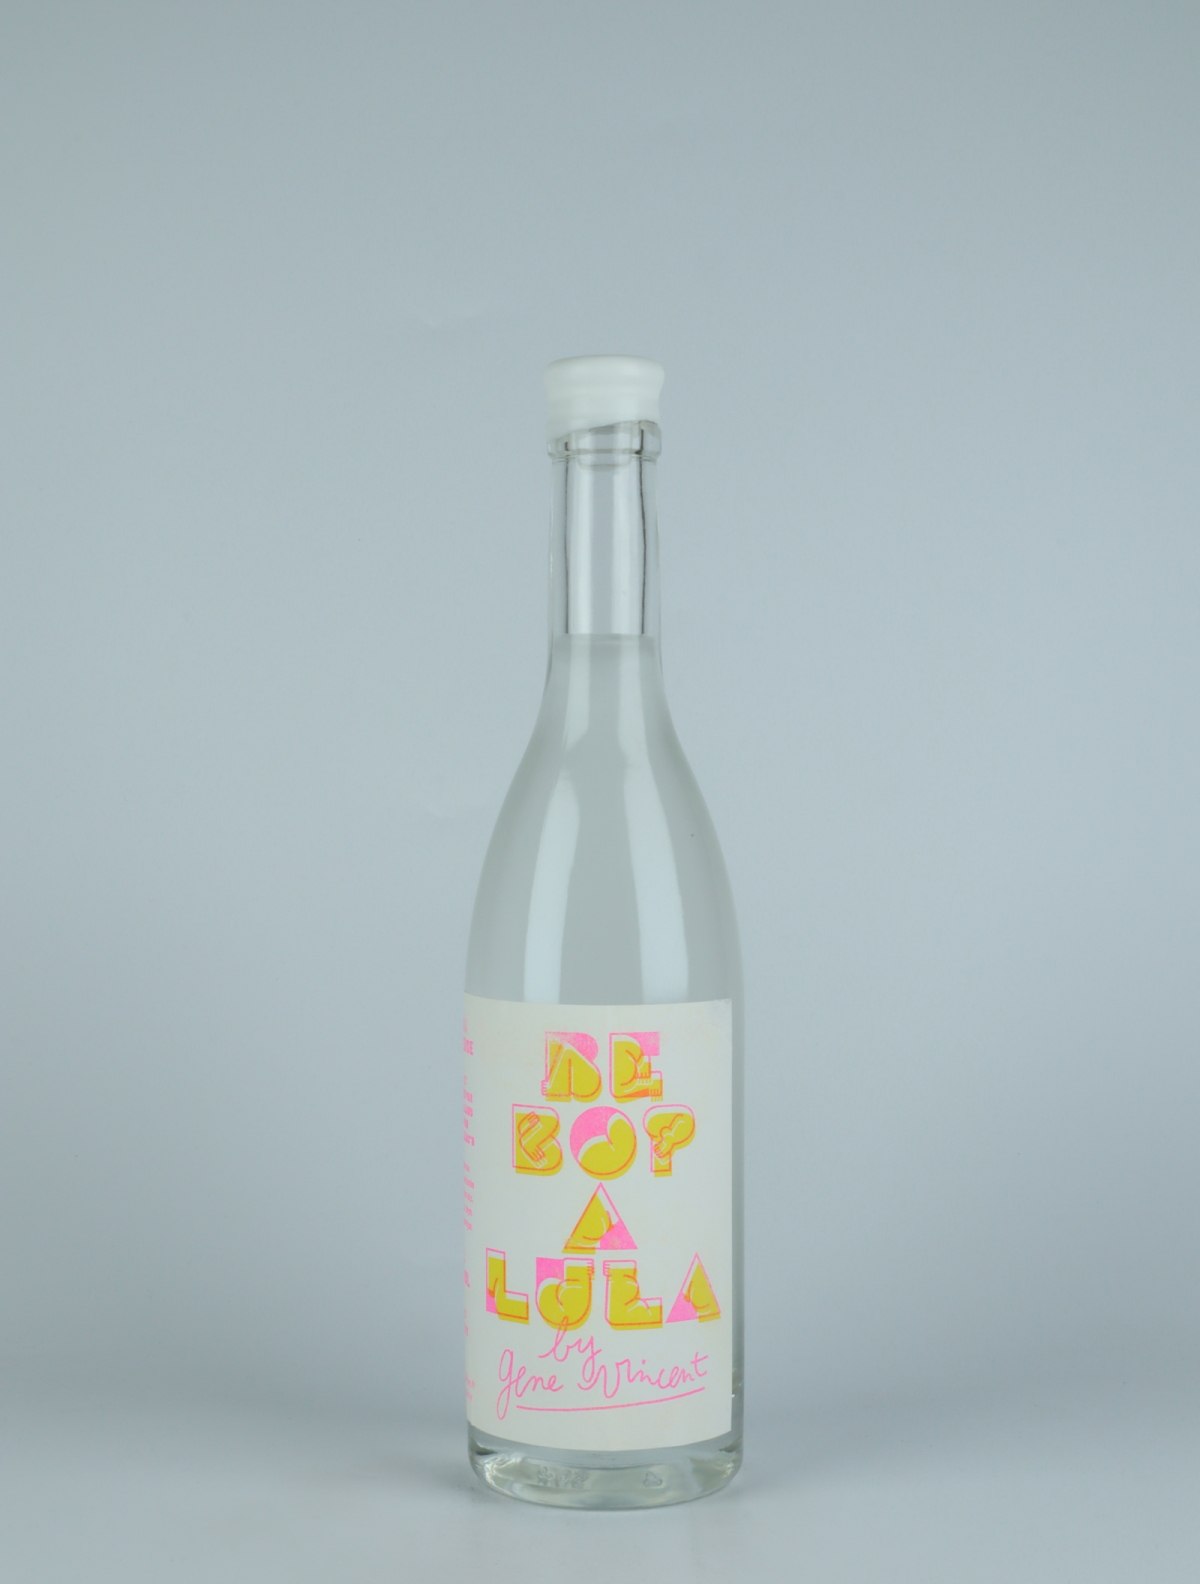 A bottle N.V. Gin - Gene Vincent Spirits from Vincent Wallard, Loire in France